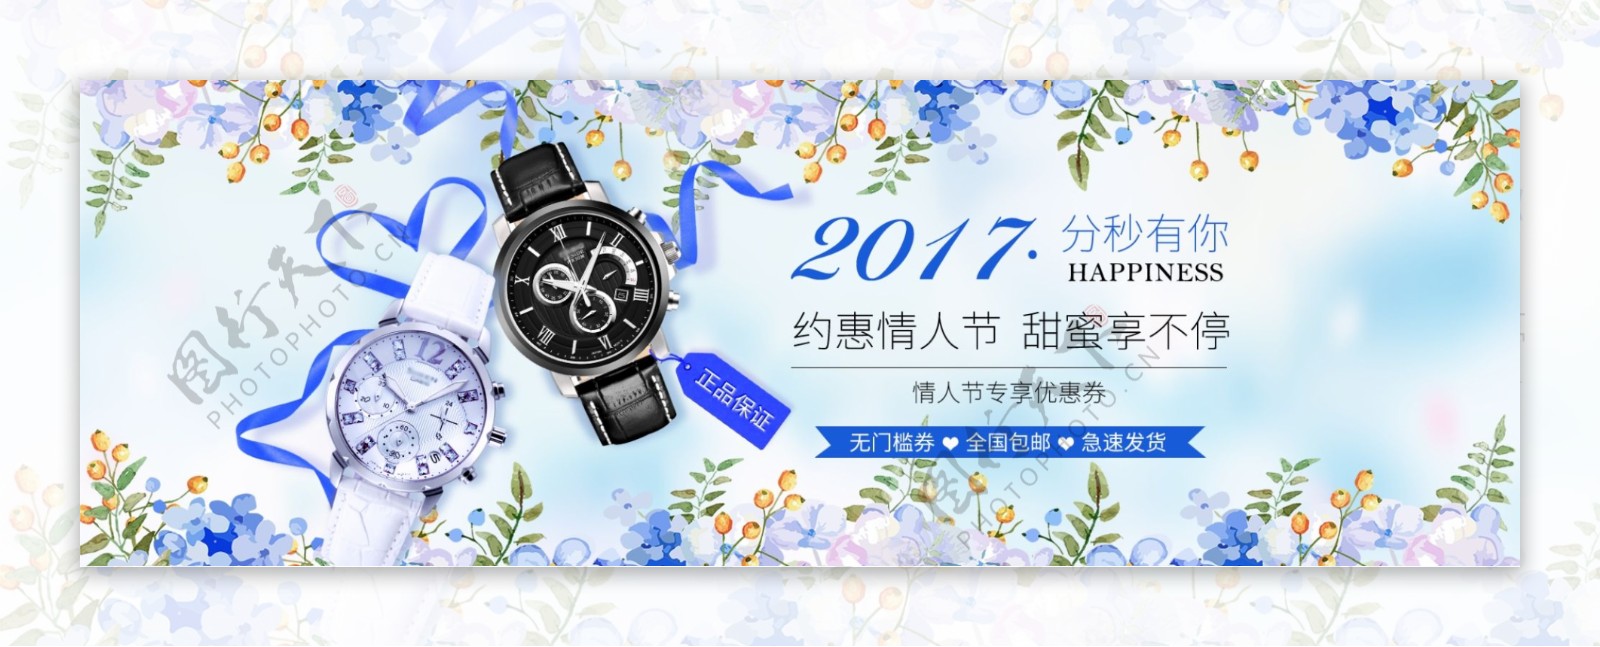 电商淘宝天猫七夕情人节电子电器手表促销海报banner